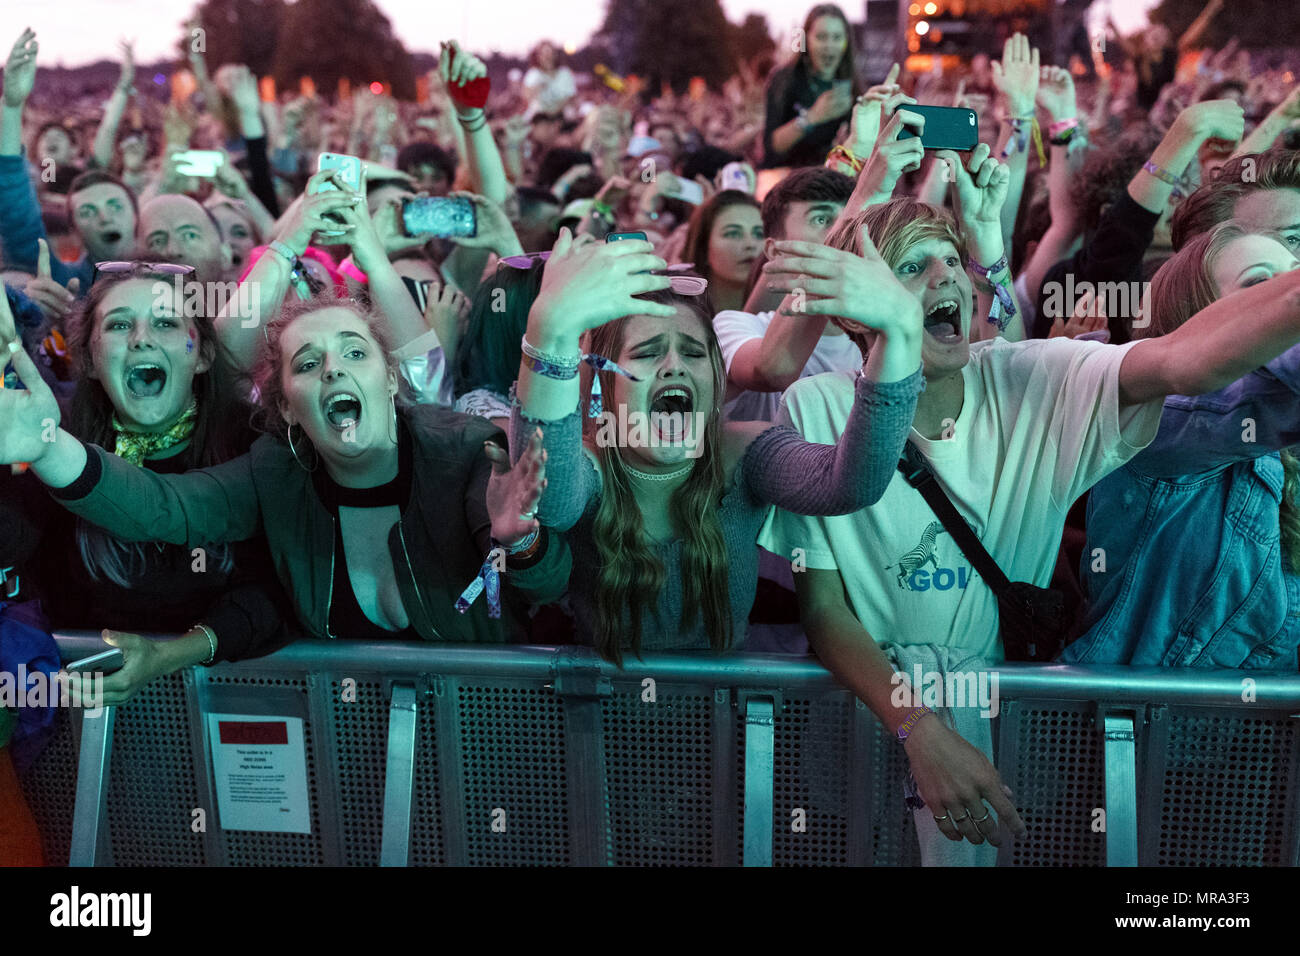 Los fans de la música fanáticos vitoreando al 1975 en Latitude Festival 2017. Henham Park, en Suffolk, Reino Unido. En el año 1975, música fangirls fans, adolescentes fanáticos de la música. Foto de stock